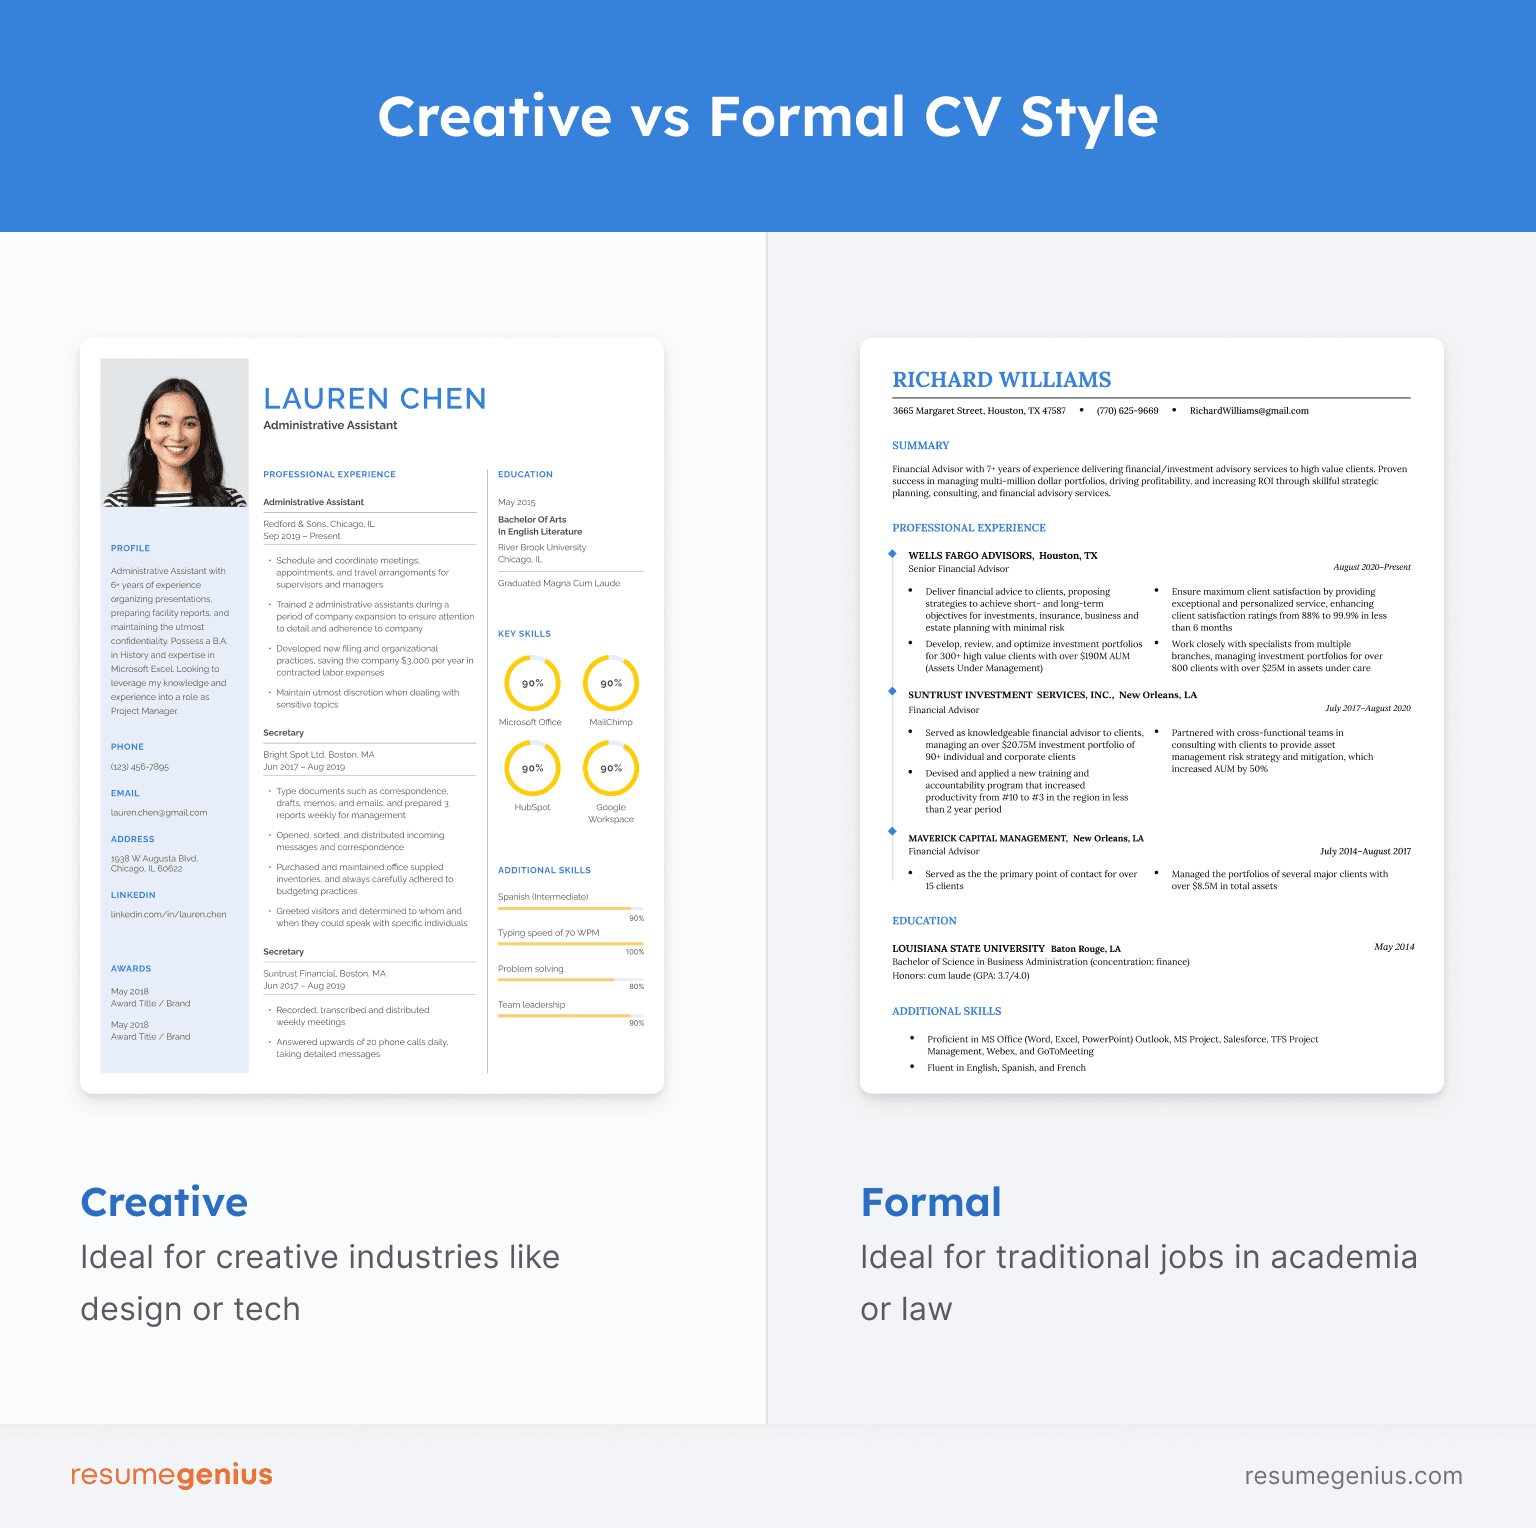 Una imagen que compara un currículum creativo, con una foto de rostro y colores brillantes, con un currículum formal, que parece simple y minimalista.